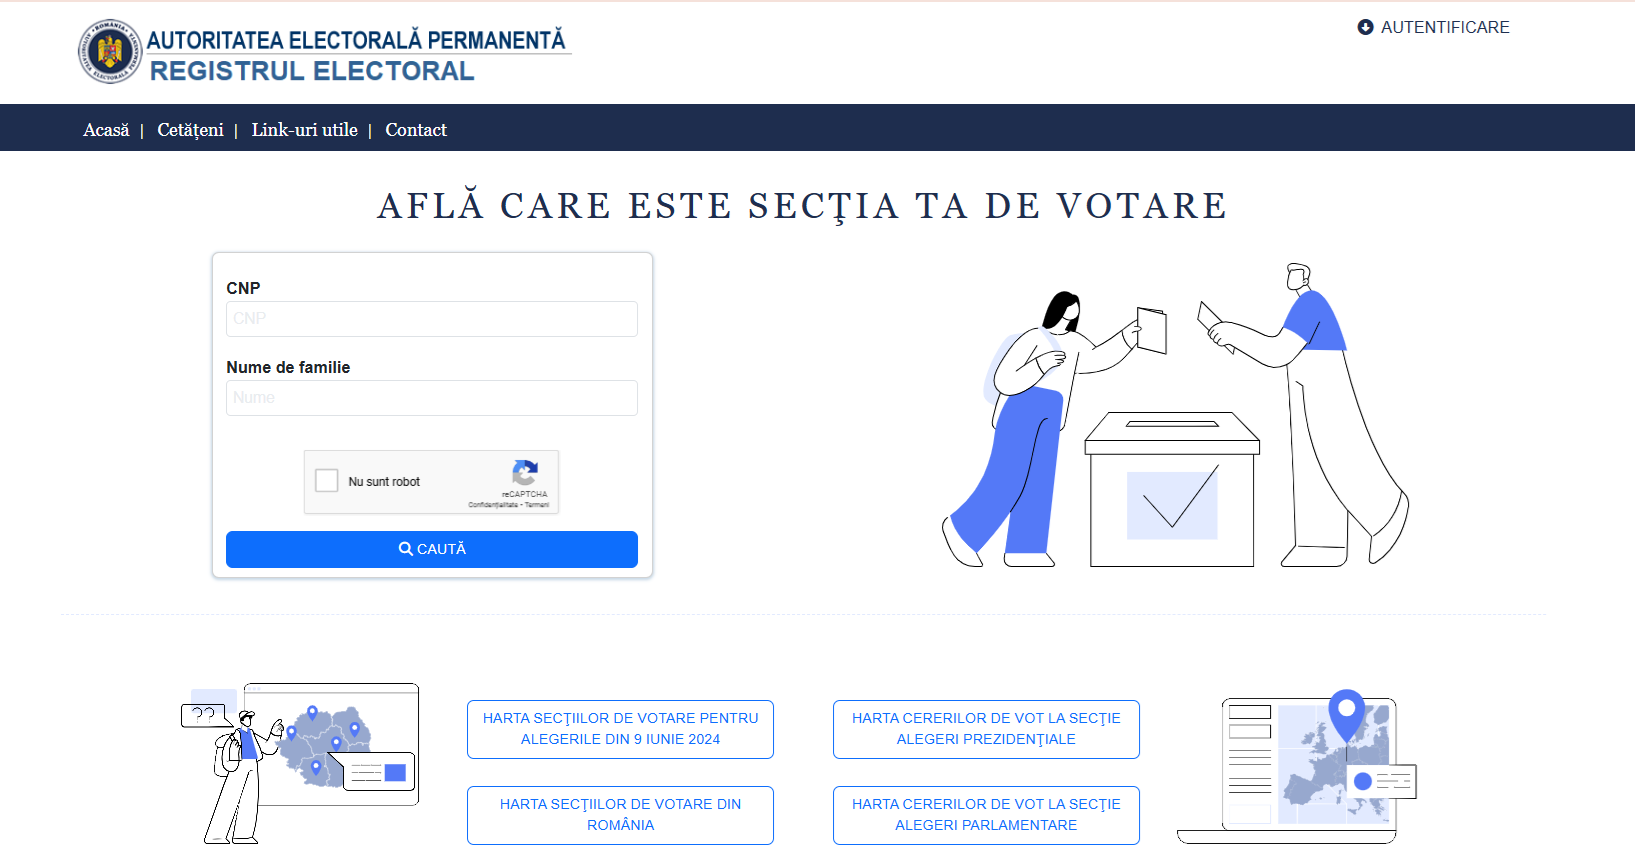 ANUNȚ IMPORTANT privind alegerile locale și europarlamentare din data de 09 iunie. Accesează site-ul www.registrulelectoral.ro pentru a afla secția de votare la care sunteți arondați.